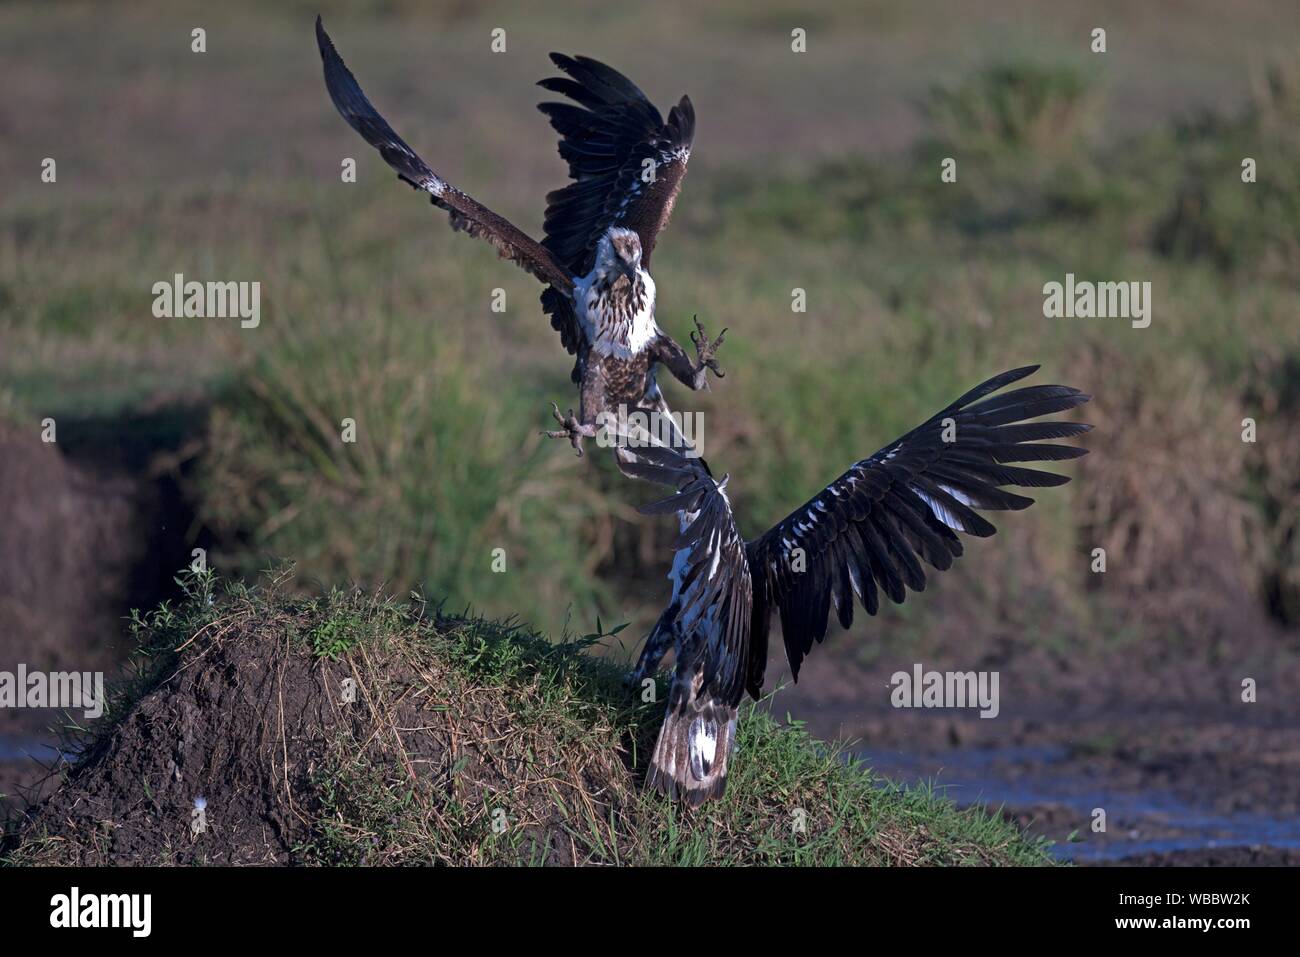 Peces africanos águilas en medio del aire lucha en Masai Mara. Foto de stock